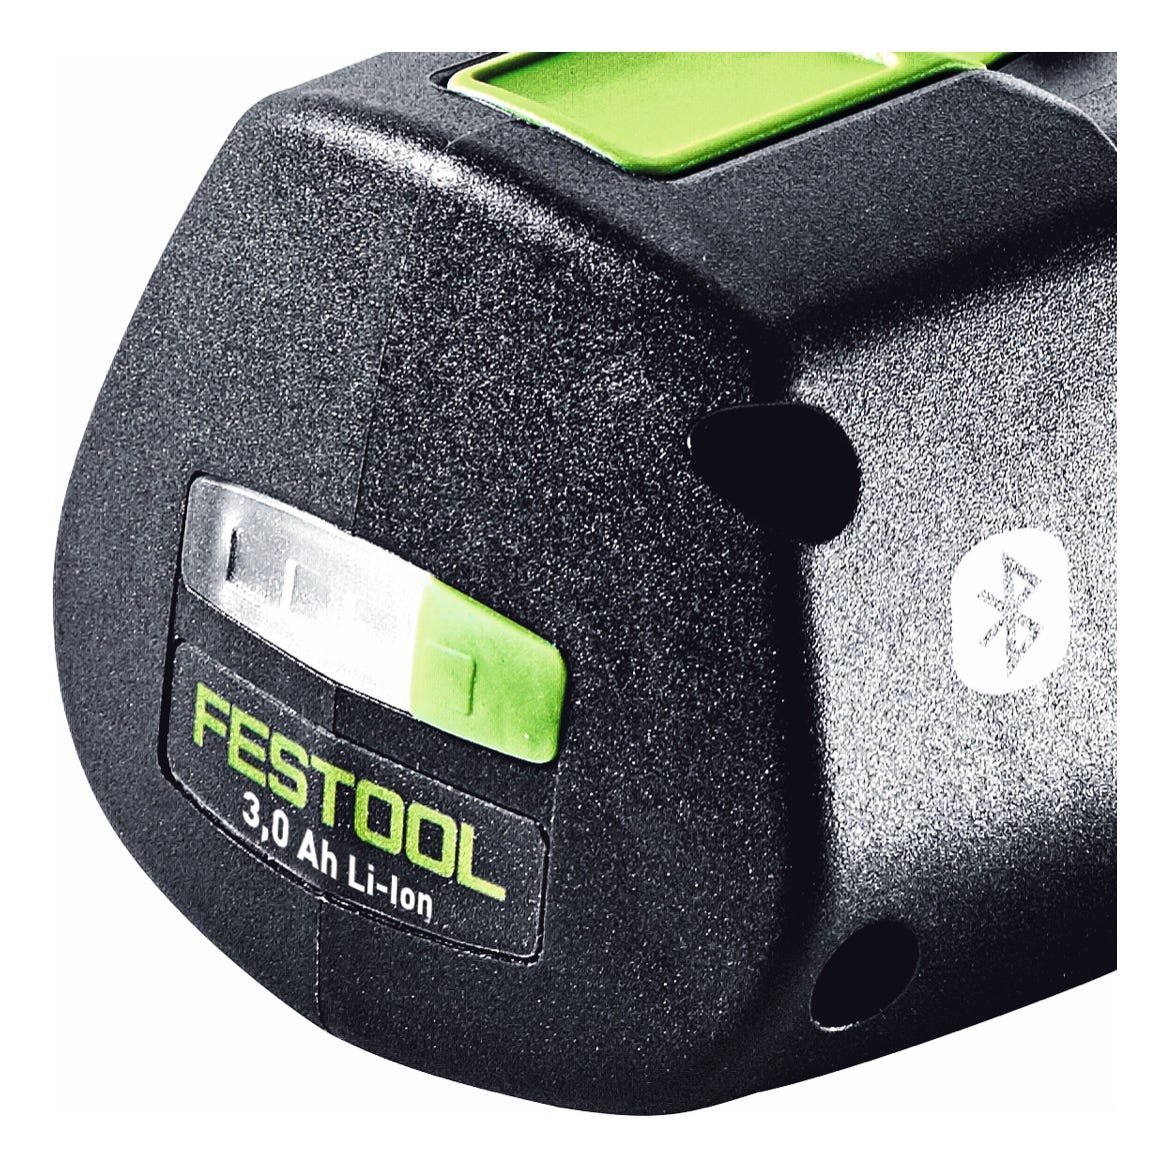 Batterie BP 18 Li 3,0 Ergo I | 577704 - Festool 1